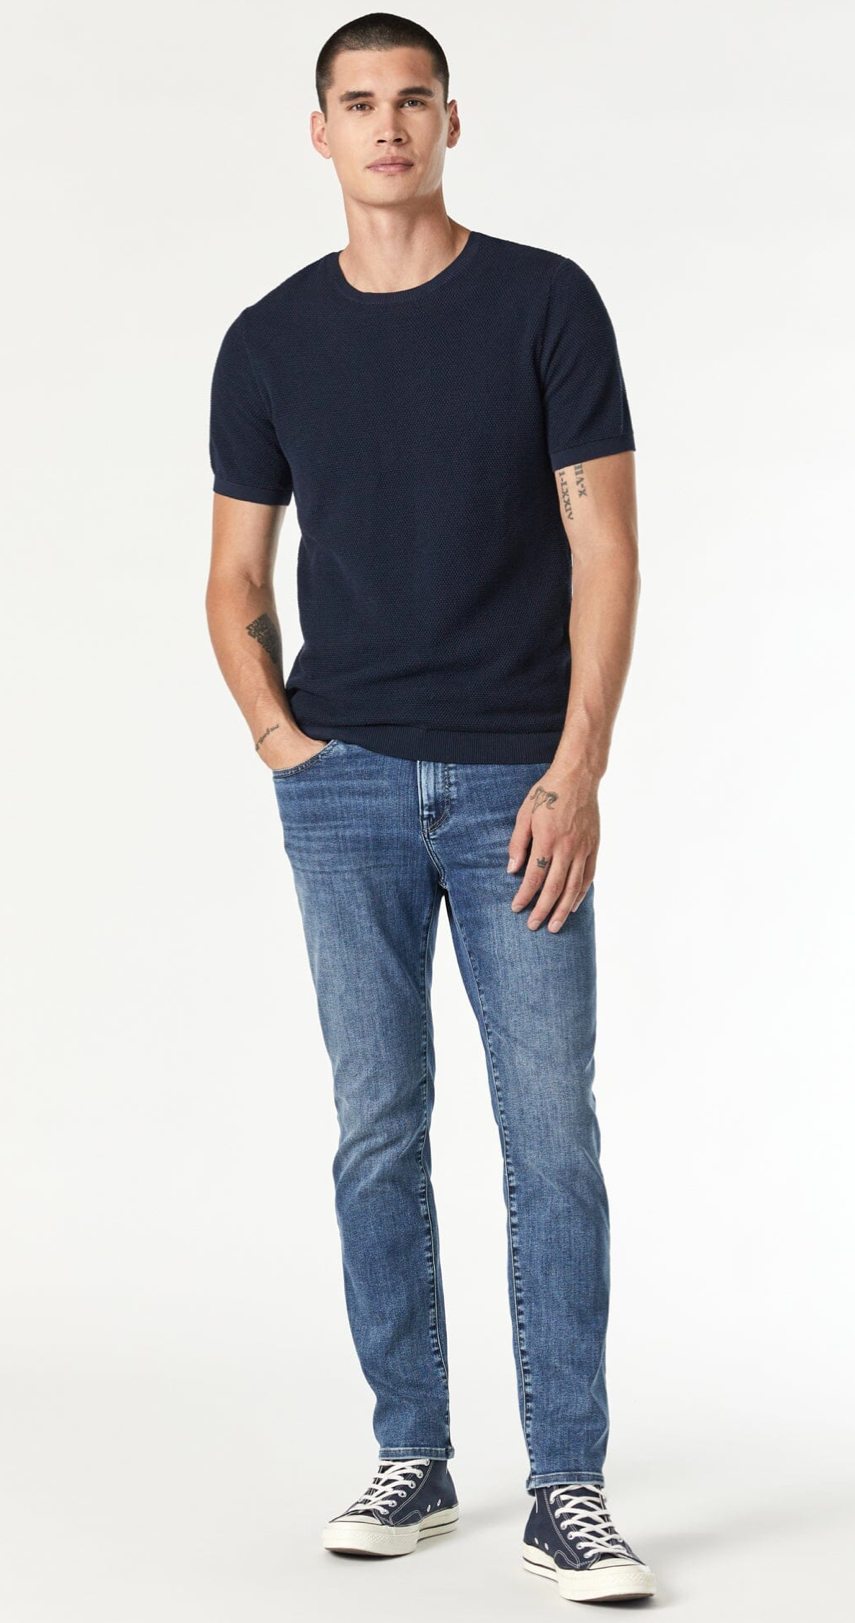 Steve athletic fit jeans- dark used supermove